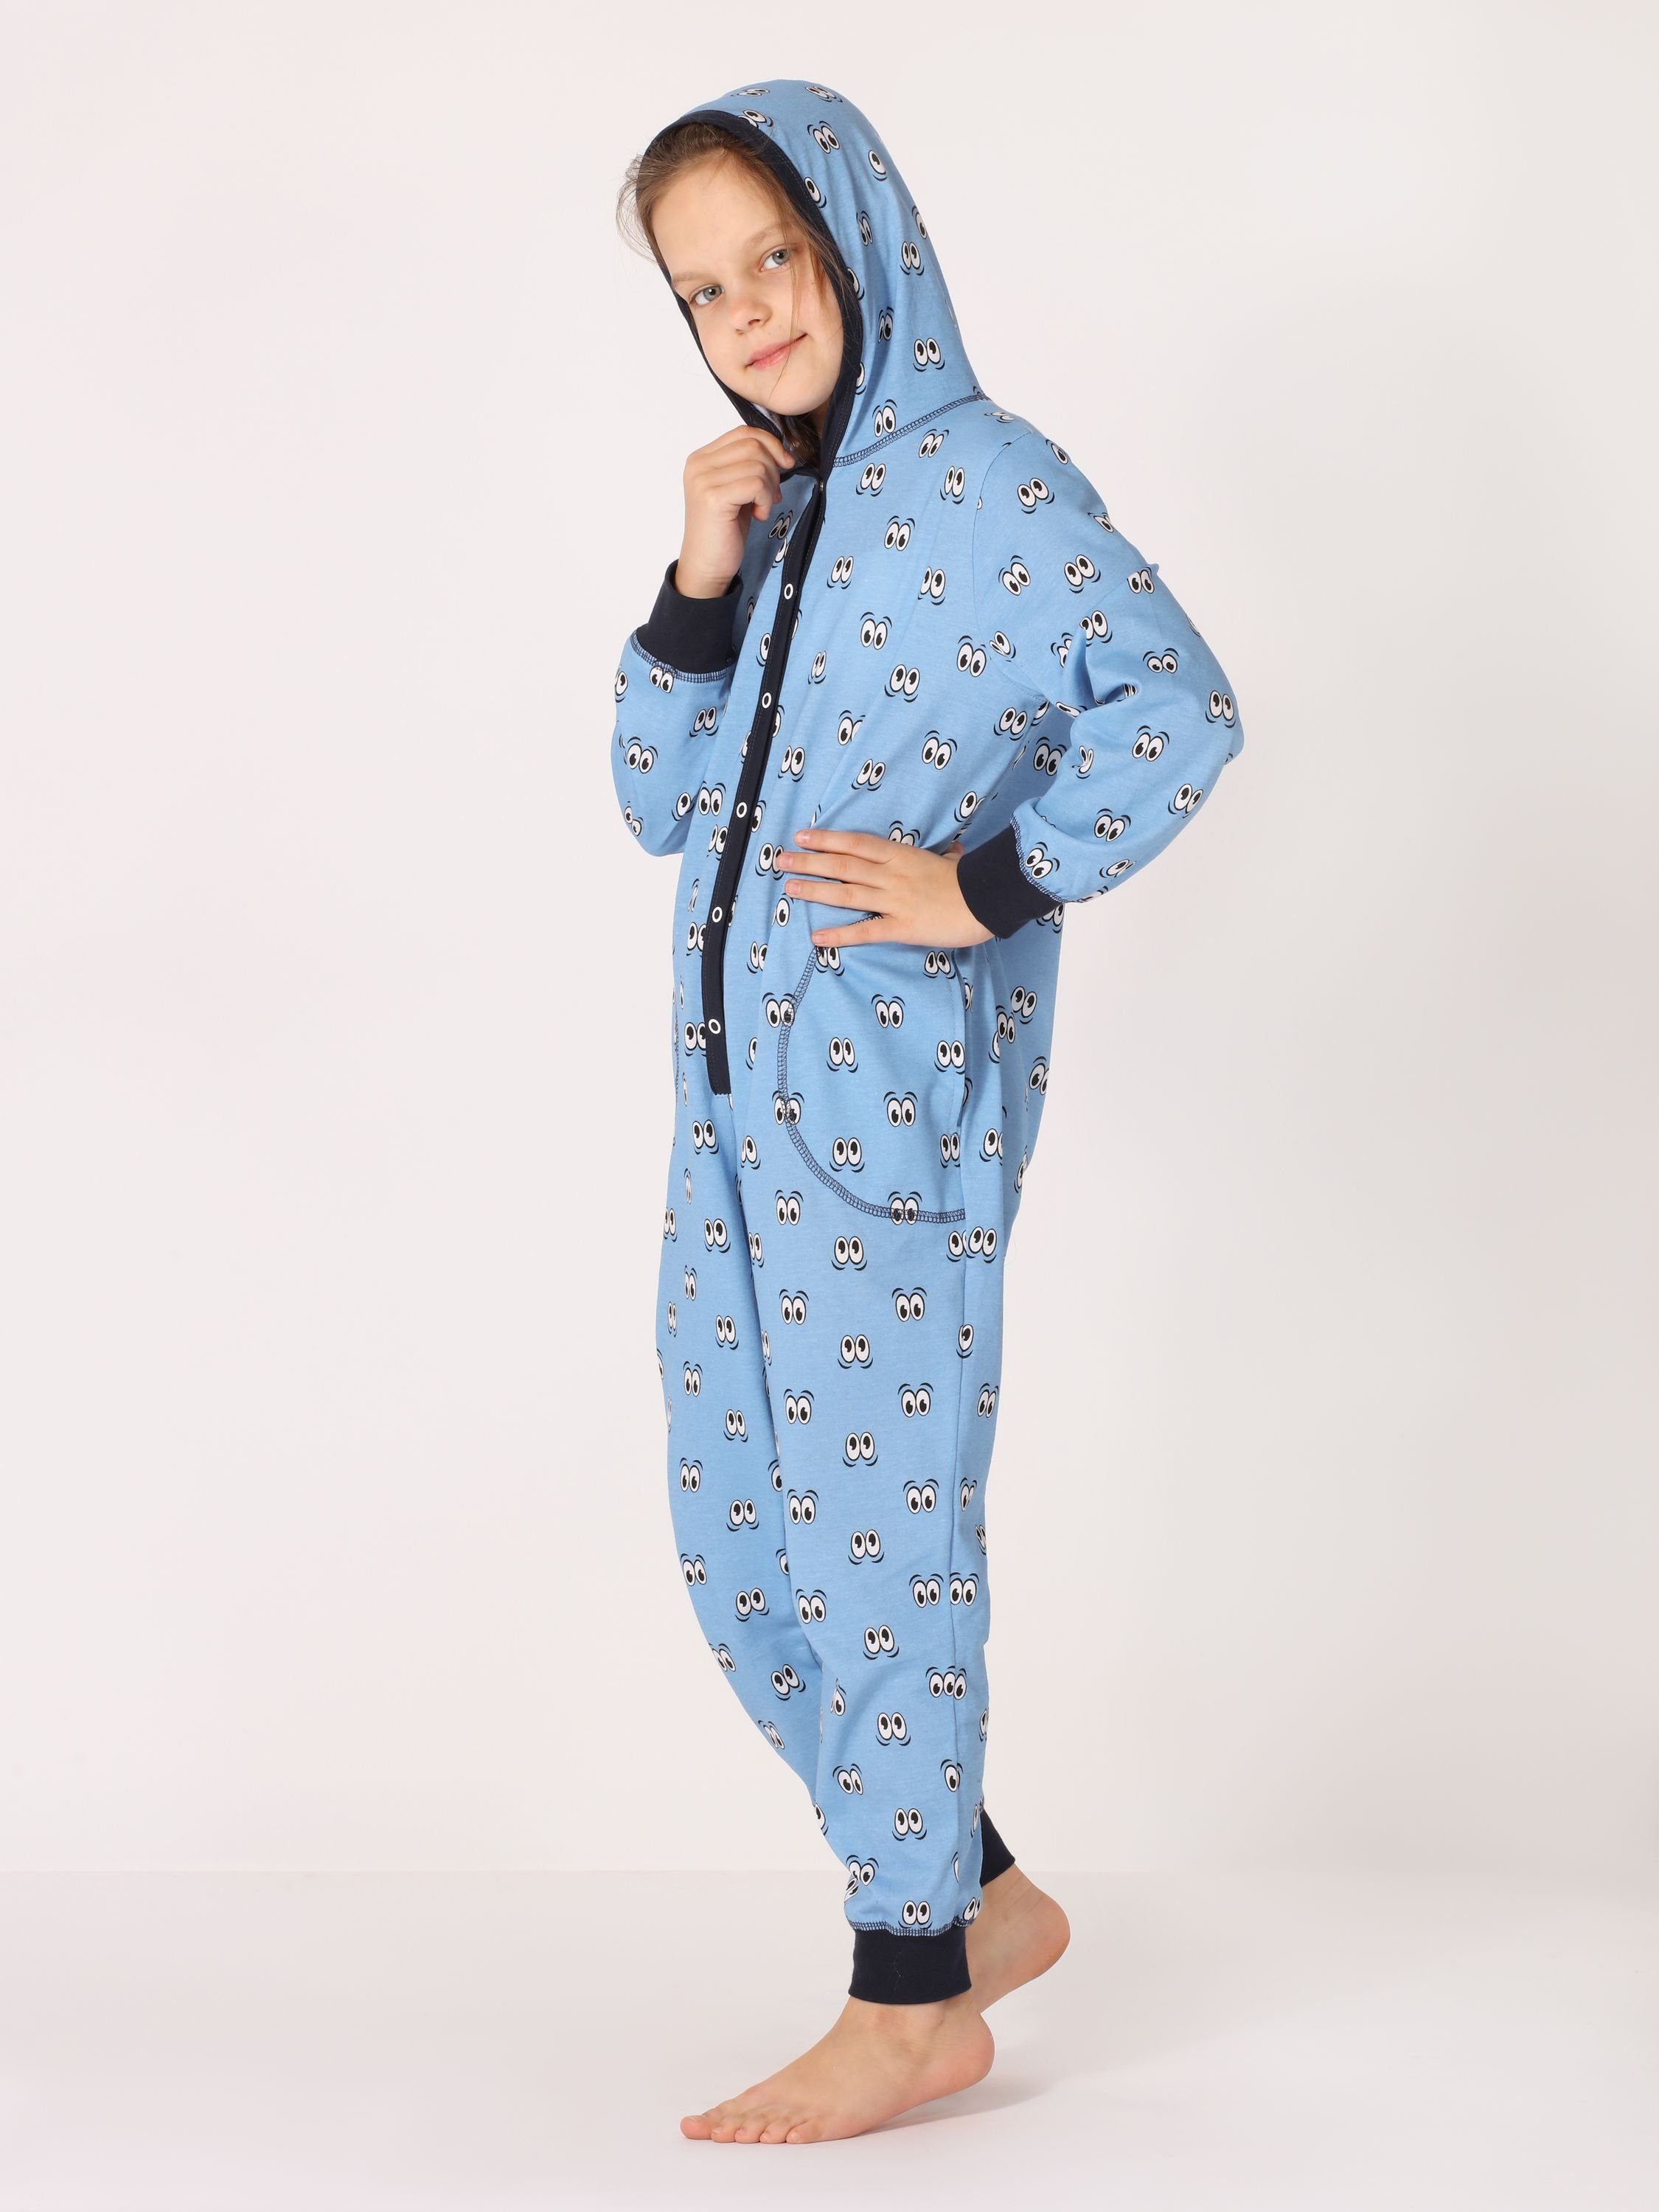 Blau Mädchen Style Kapuze MS10-223 Augen Schlafoverall Merry mit Schlafanzug